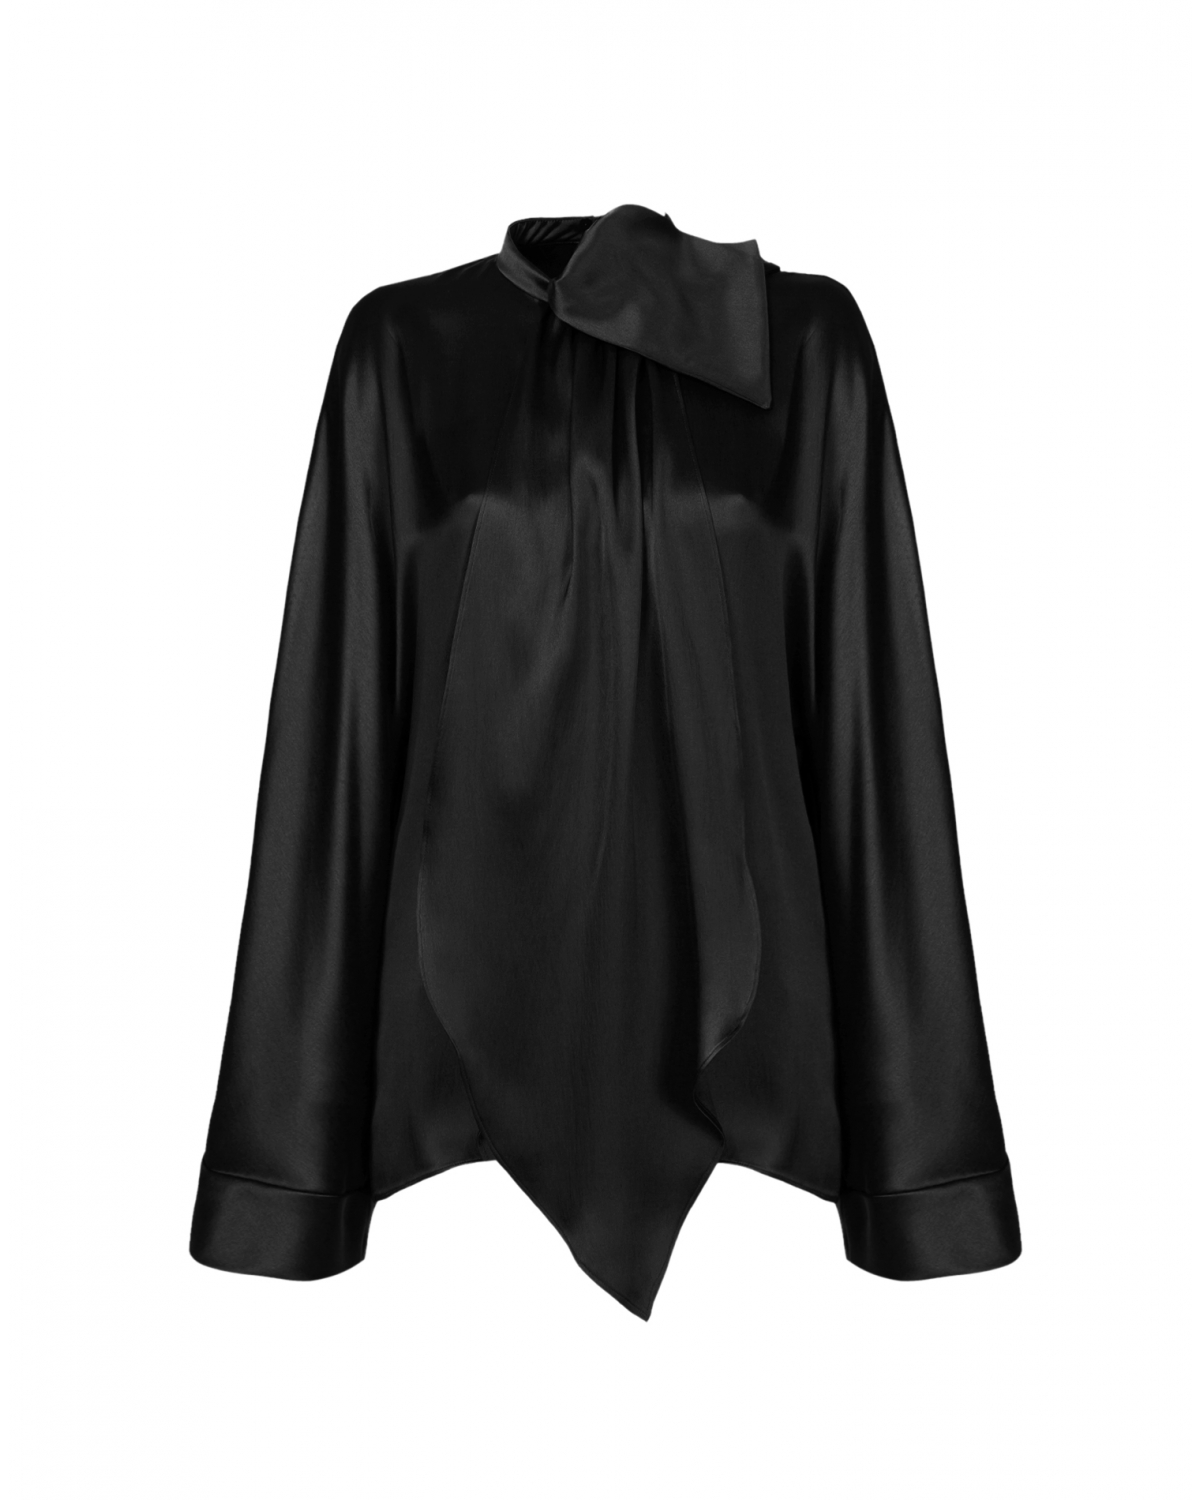 Black satin silk blouse with kimono sleeves